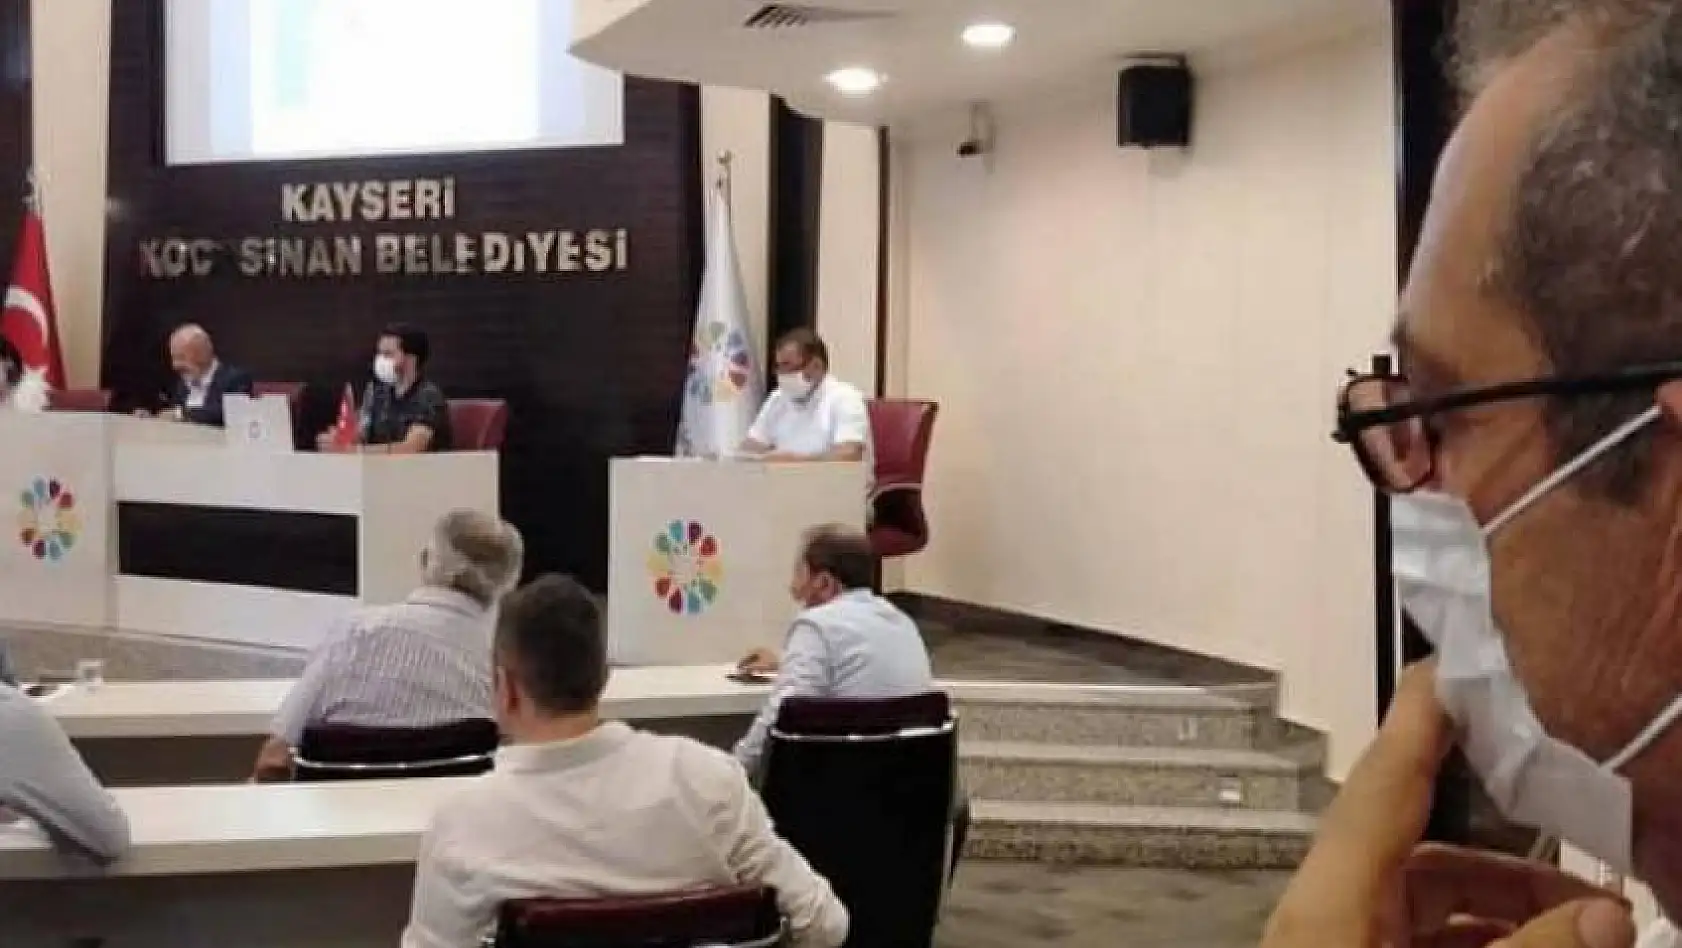 O ilçe başkanından belediye meclisleri ile ilgili şok açıklama: Kayseri'nin geleceği mirasyedi gibi satılıyor